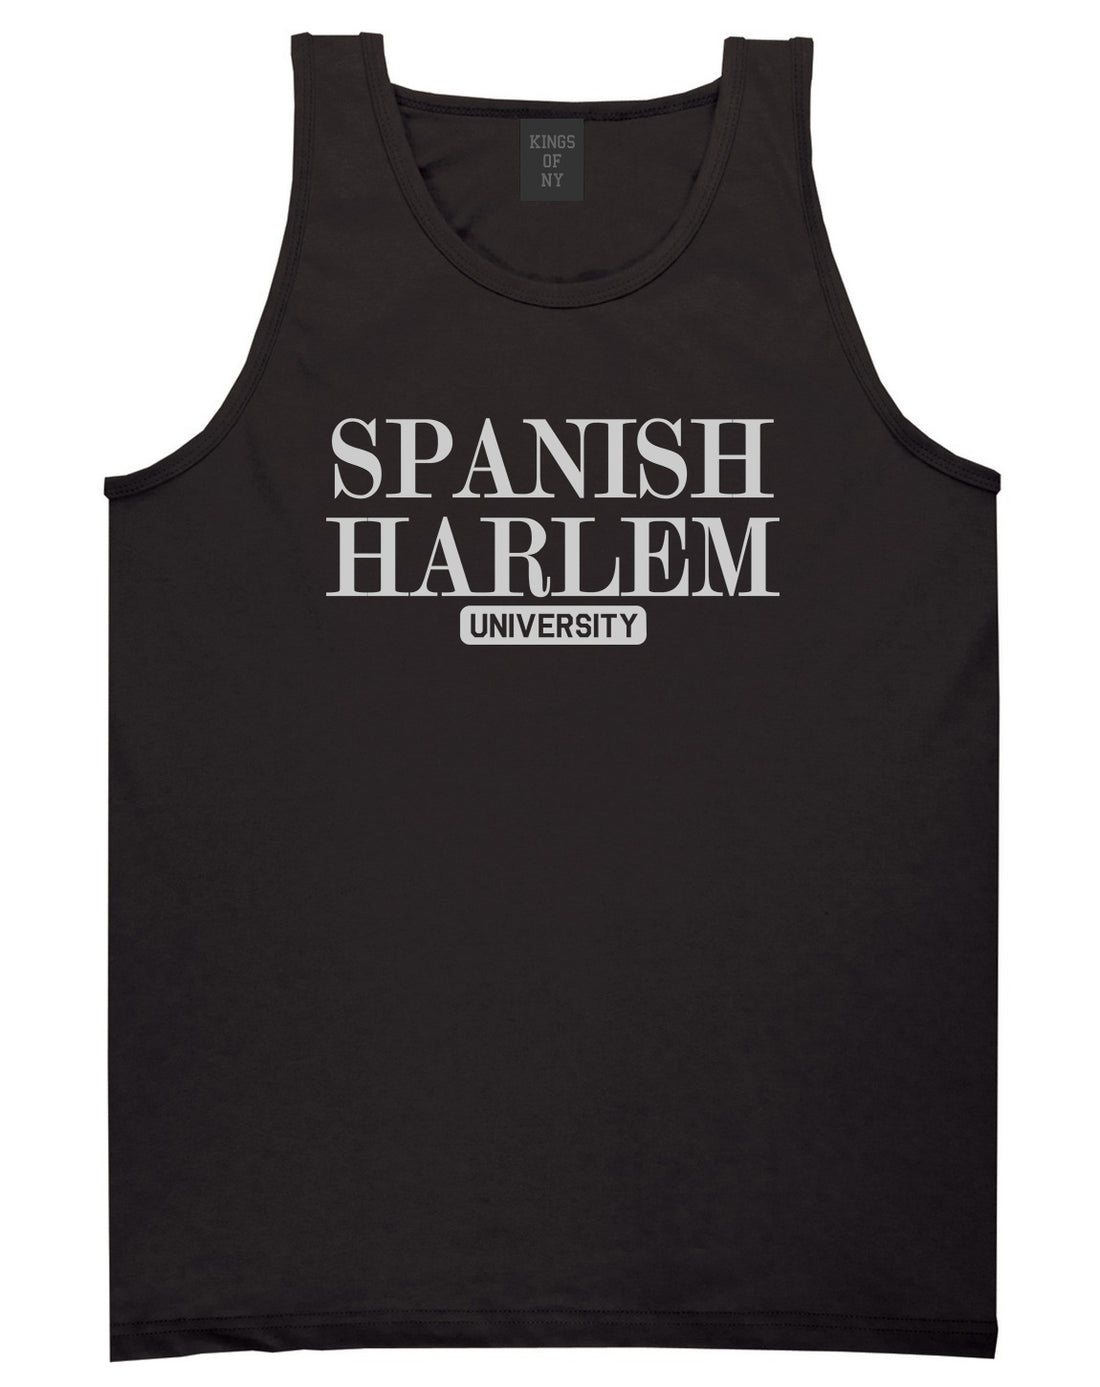 Spanish Harlem University New York Mens Tank Top T-Shirt Black